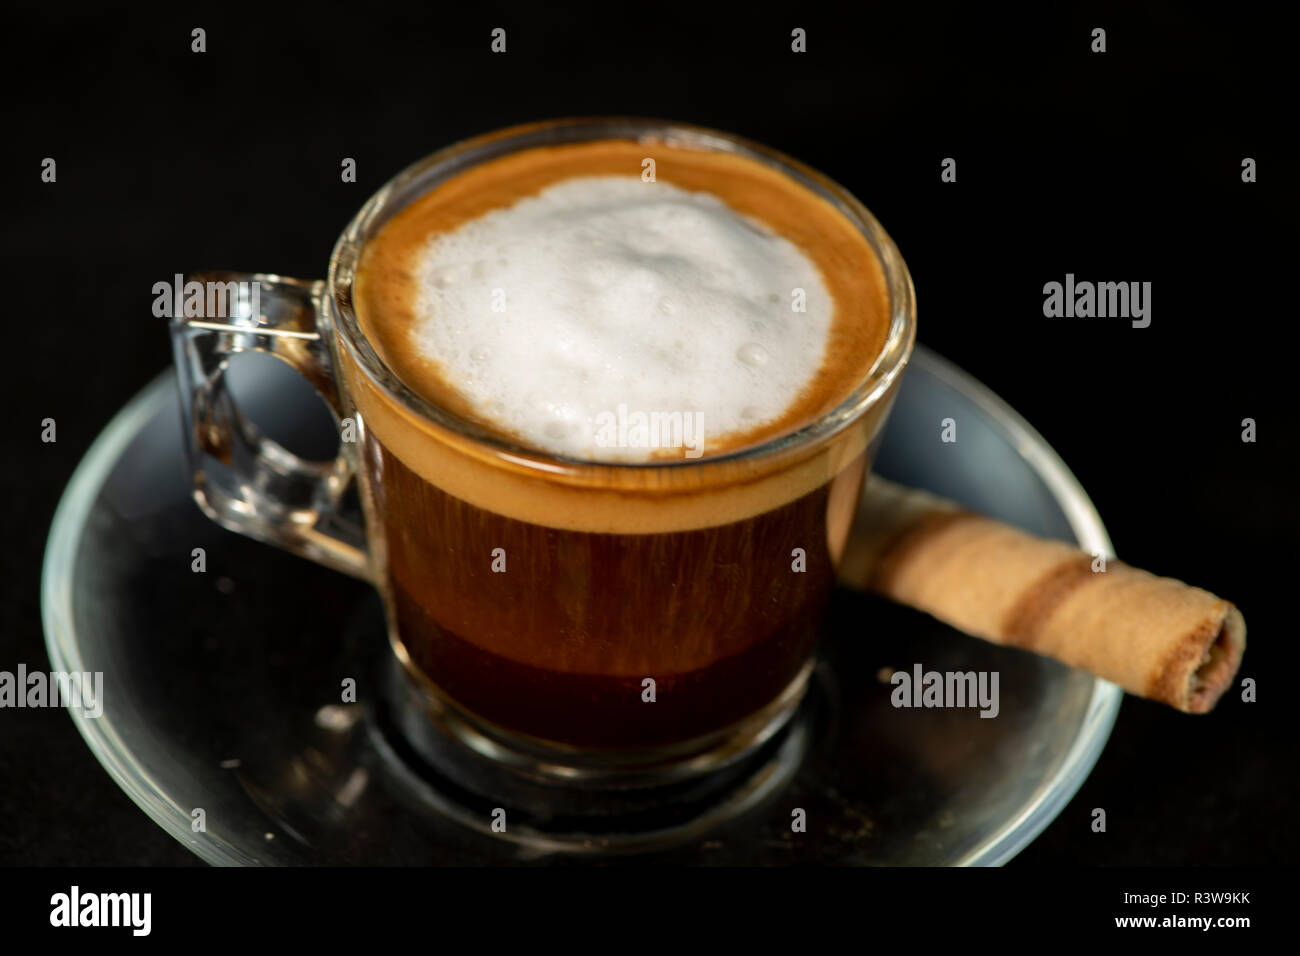 https://c8.alamy.com/comp/R3W9KK/italian-macchiato-coffee-with-wafer-roll-with-isolated-black-background-R3W9KK.jpg